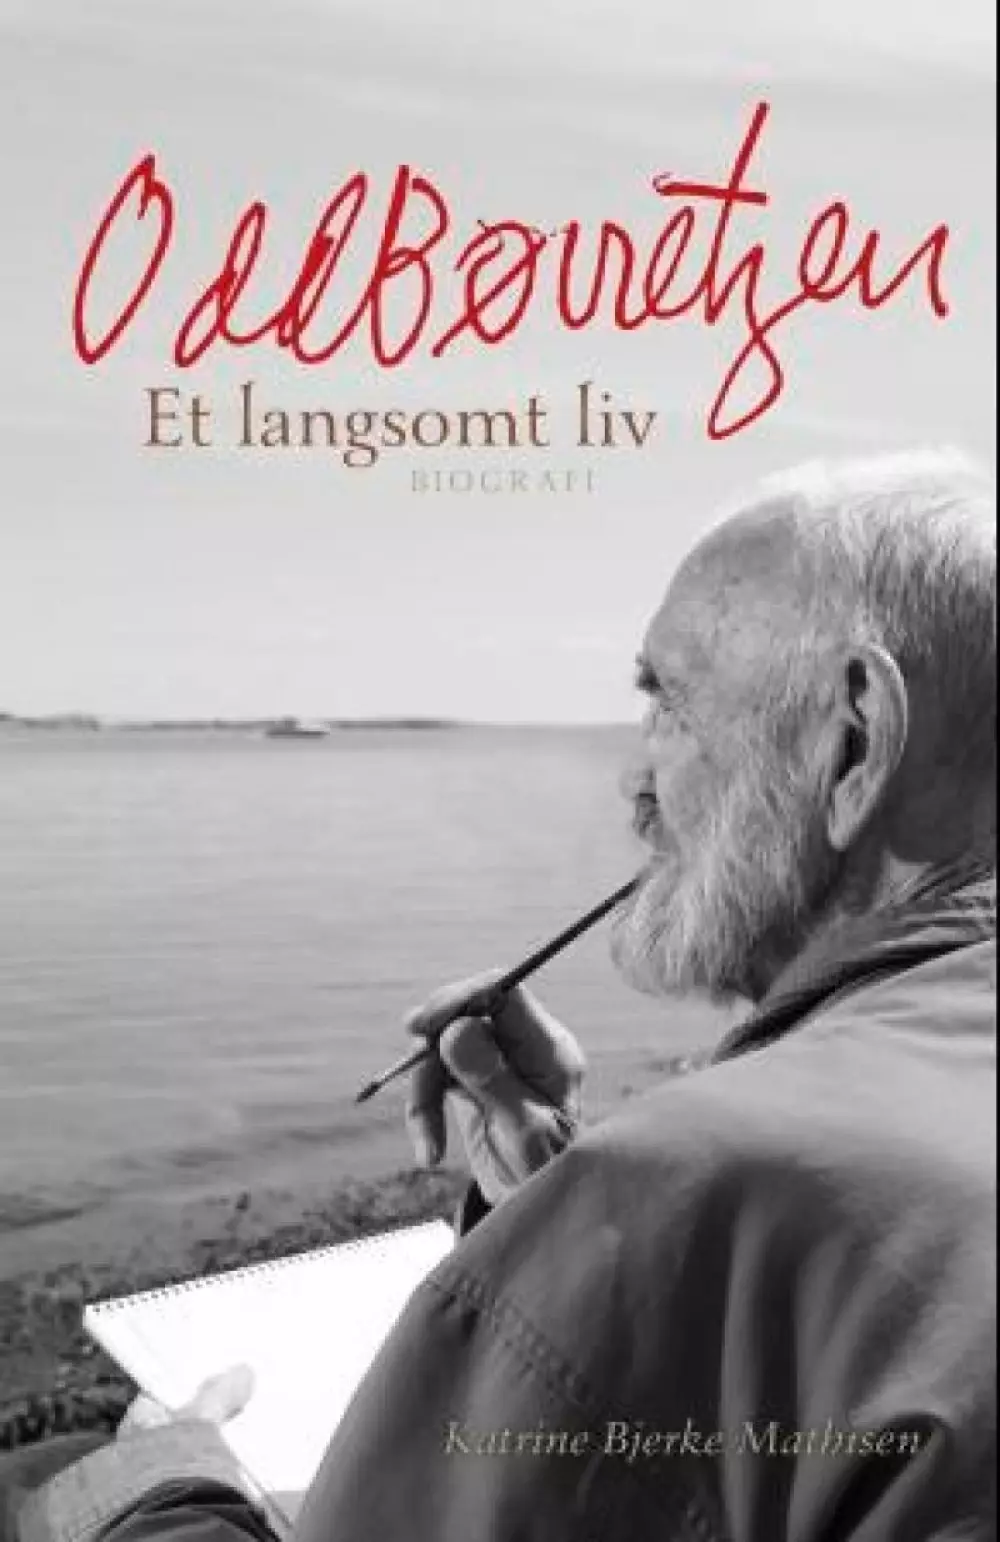 Odd Børretzen - Et langsomt liv, 9788282054683, Romaner, Katrine Bjerke Mathisen - Innbundet biografi